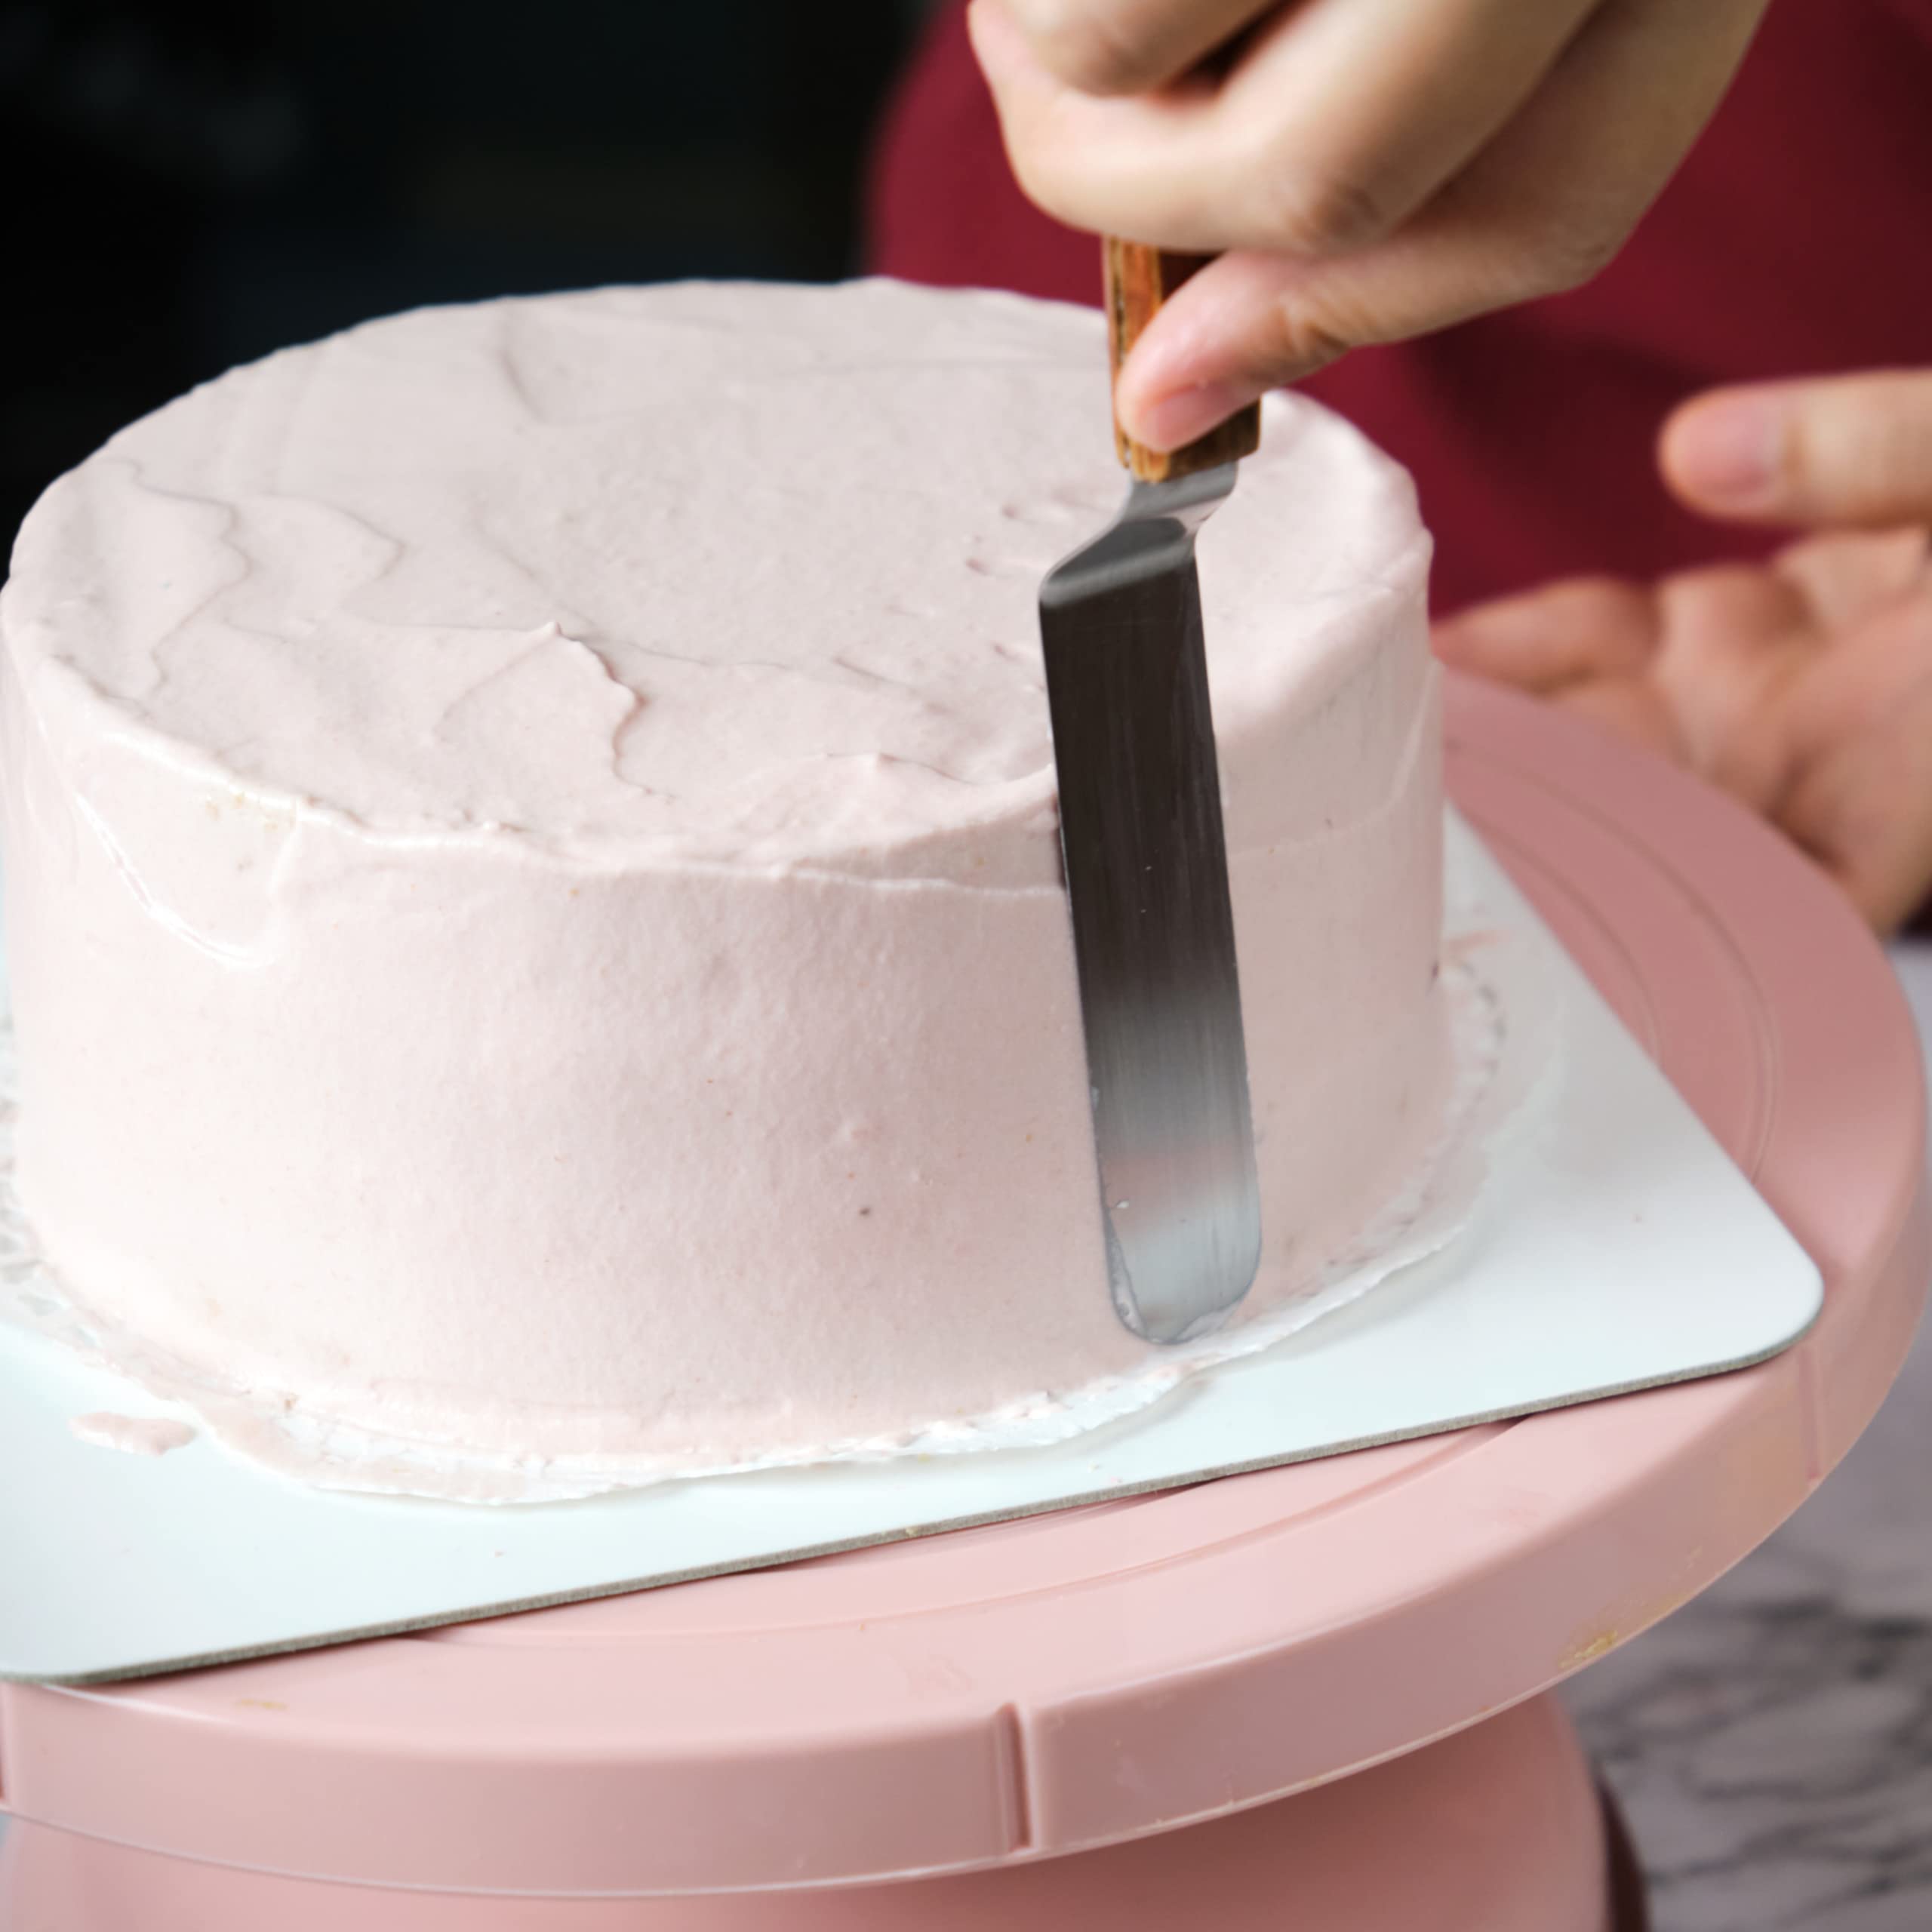 vent produit materiel patisserie cake glace moule chocolat bassin fouet spatule couteau gateau poche pastry